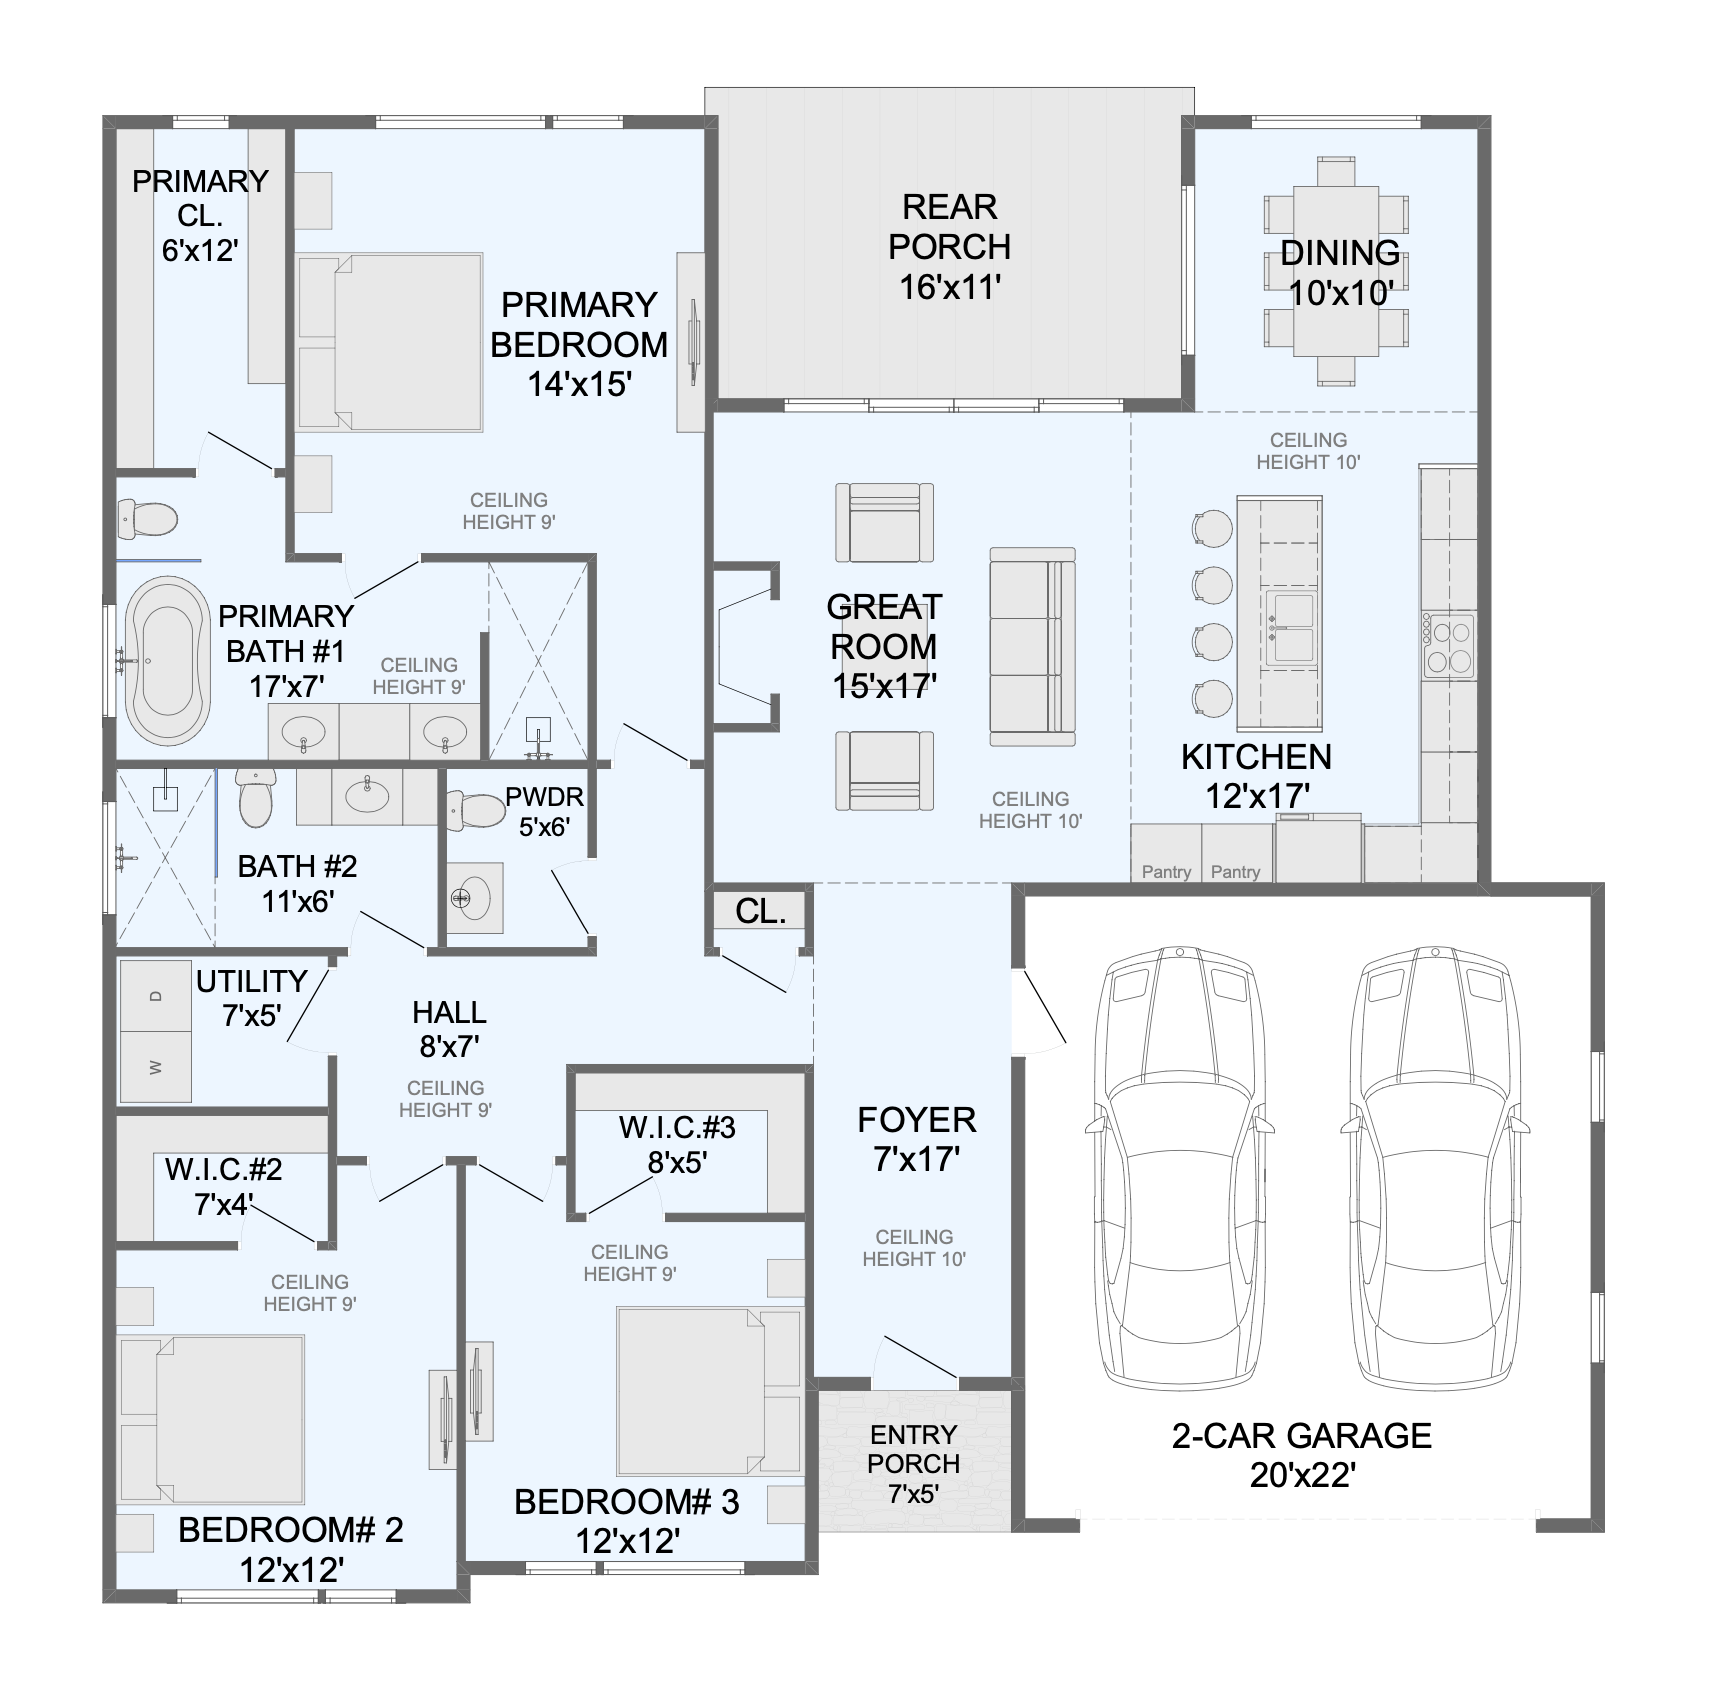 Arden. Floor Plans for Family Houses, New House Plans